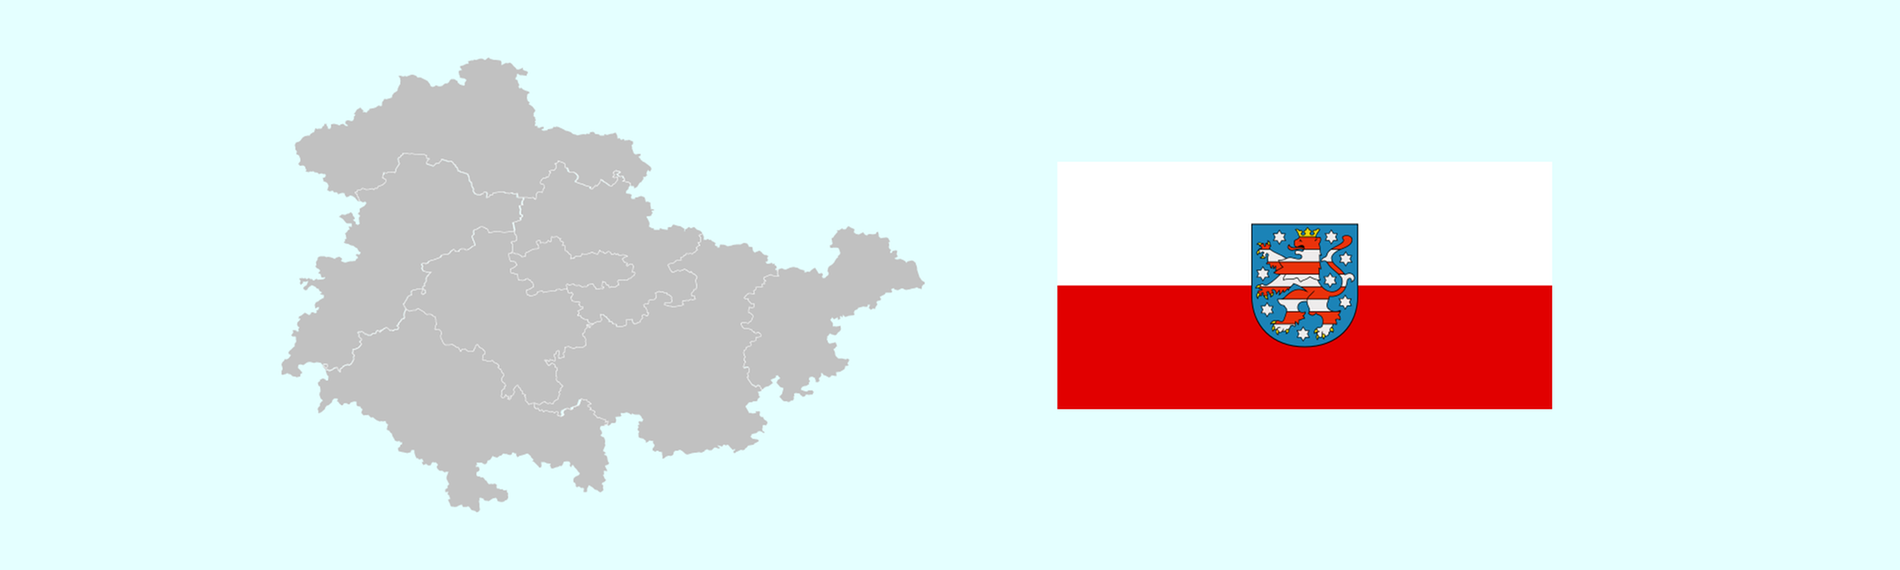 Wahlkreise und Flagge von Thüringen